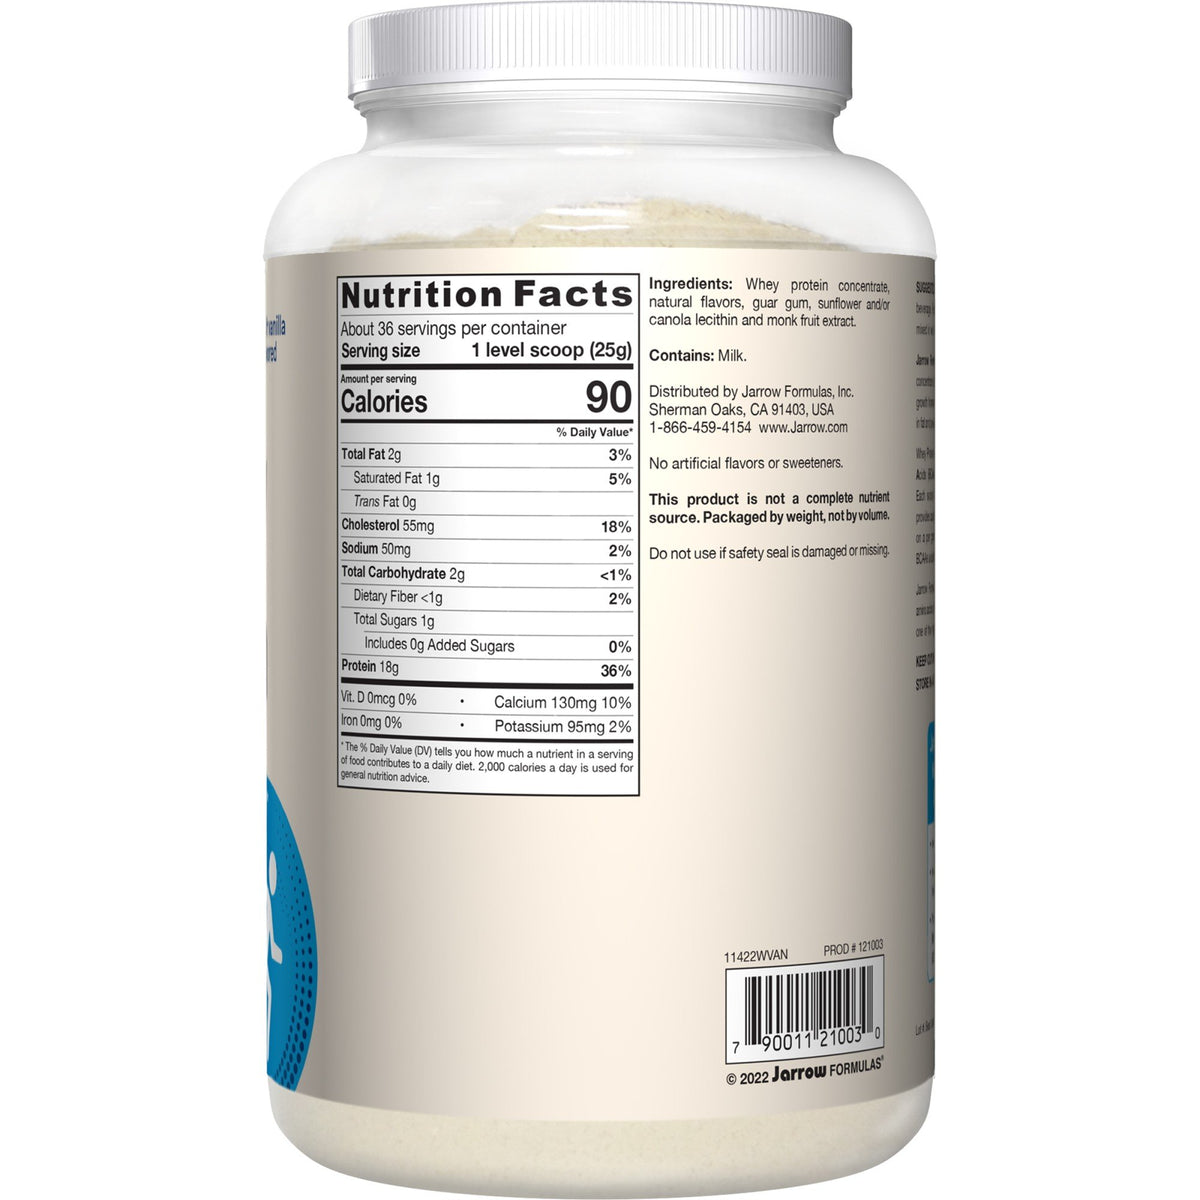 Jarrow Formulas Whey Protein-Vanilla 2 lbs Powder